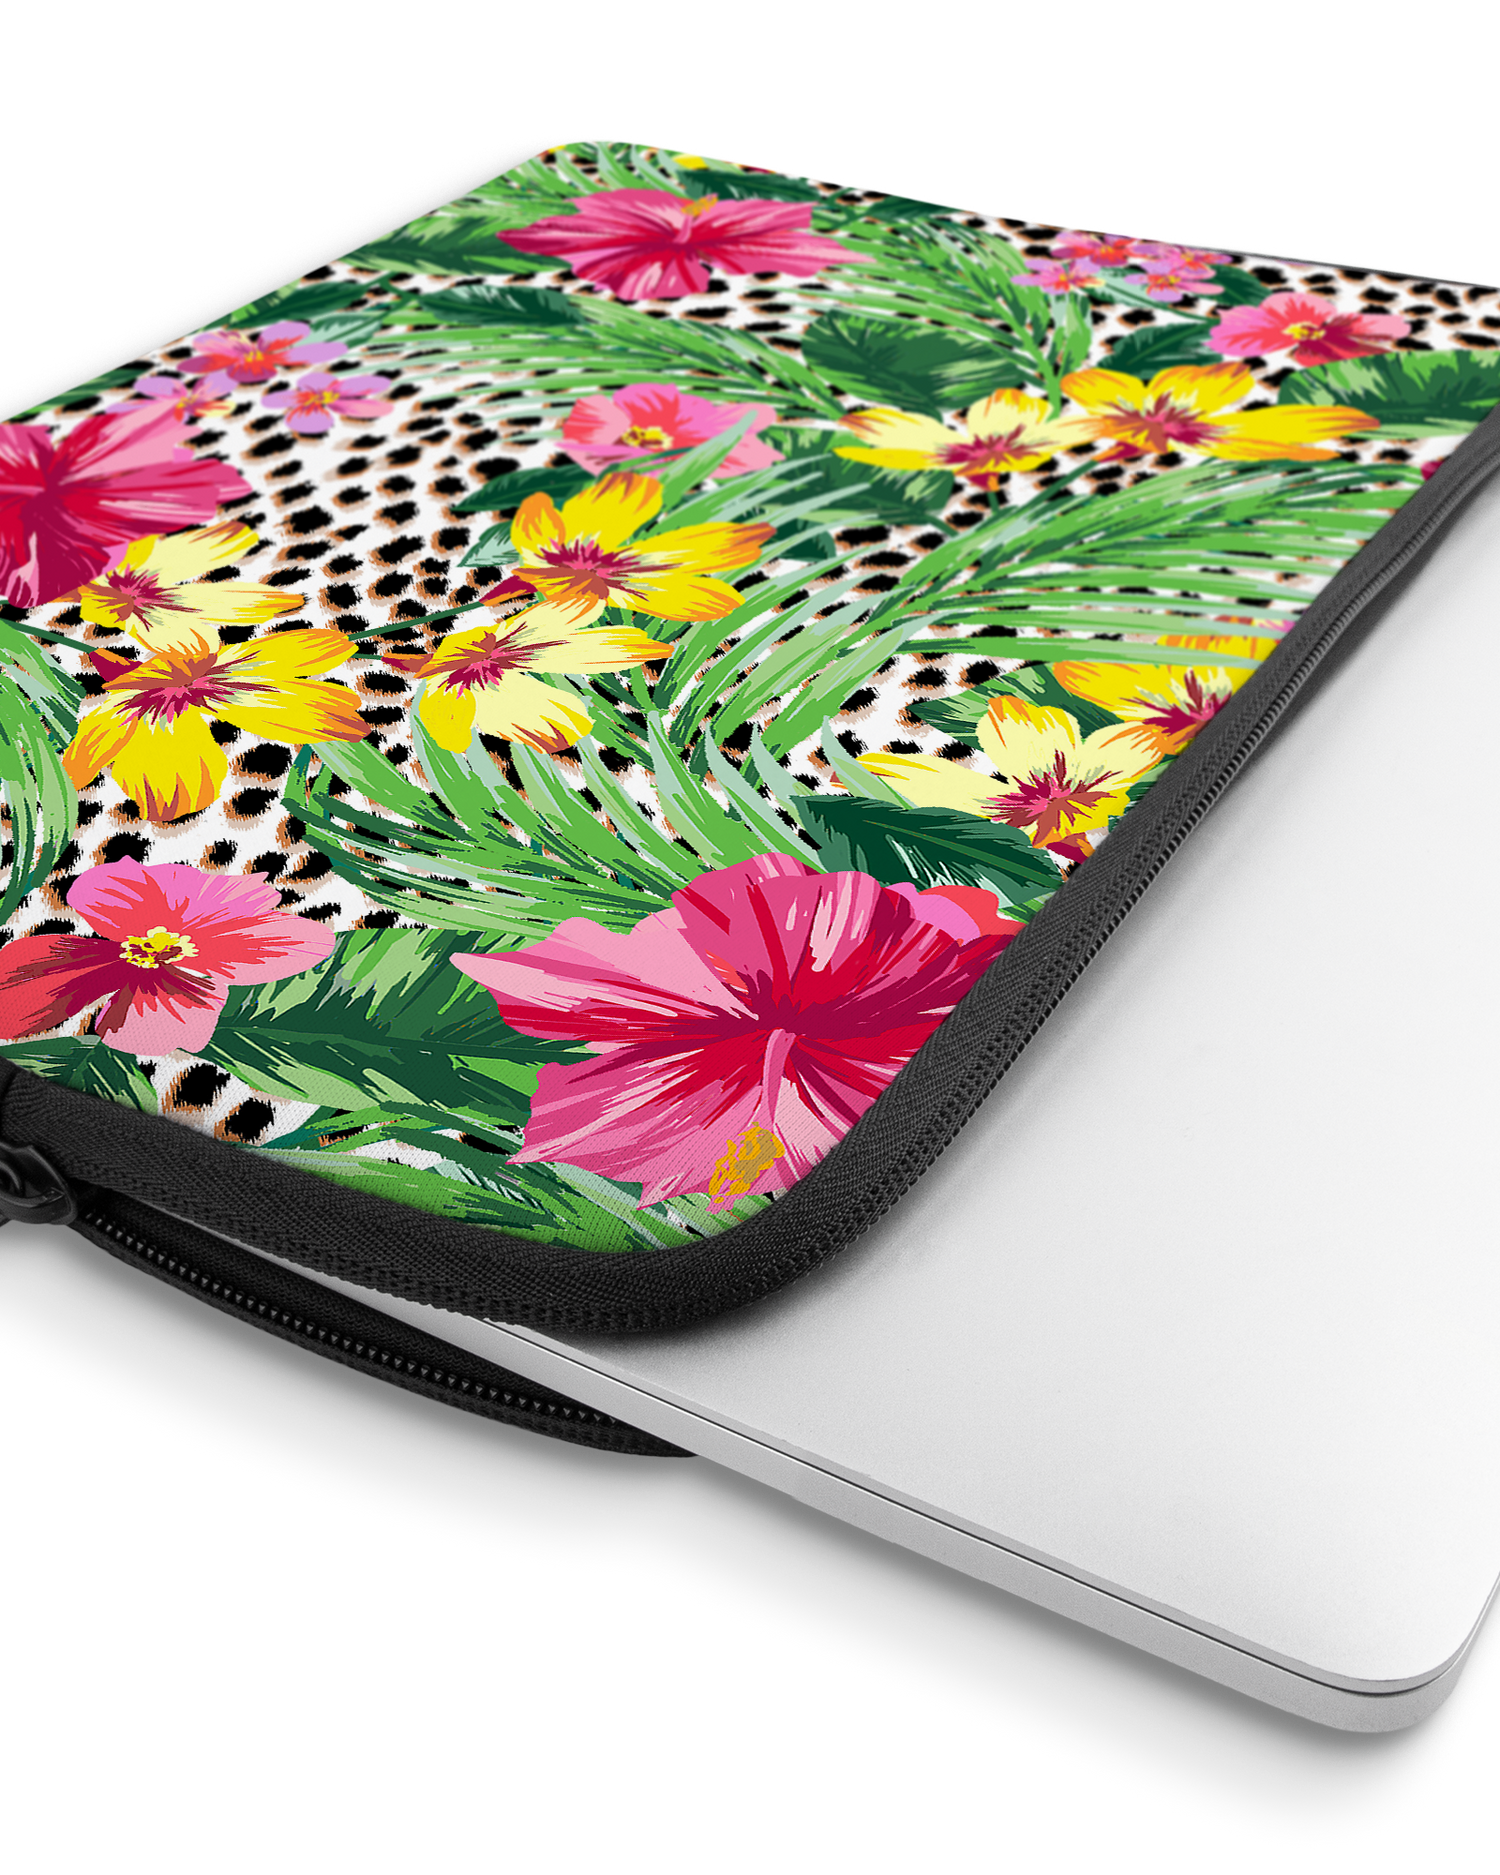 Tropical Cheetah Laptophülle 13 Zoll mit Gerät im Inneren